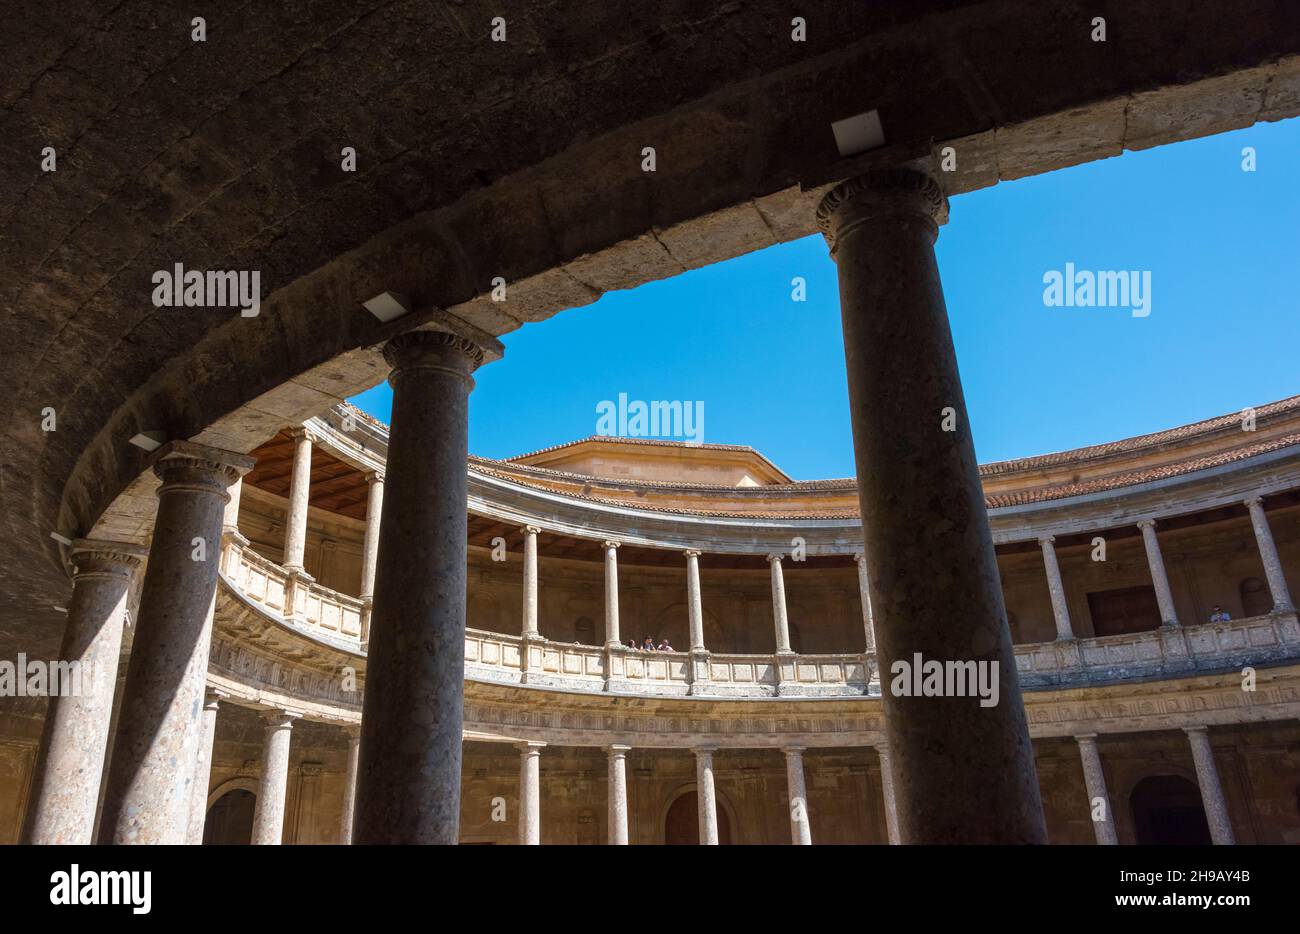 Kreisförmiger Innenhof im Palast Karls V. in der Alhambra, Granada, Provinz Granada, Autonome Gemeinschaft Andalusien, Spanien Stockfoto